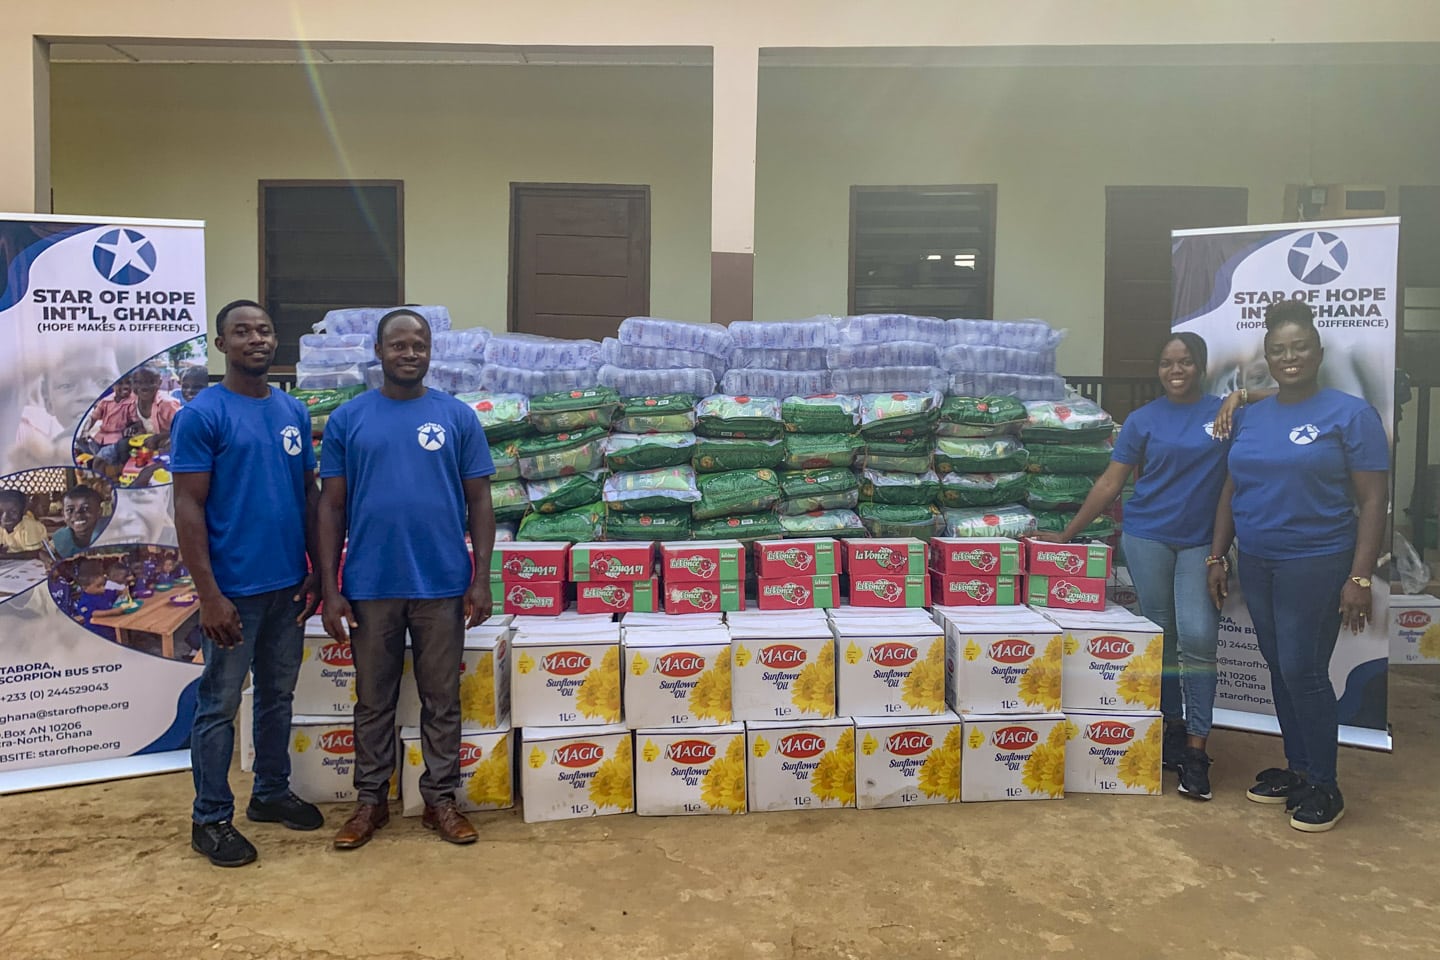 Star of hope Ghana Flood Victims Receive Vital Relief Aid Ghana small 3